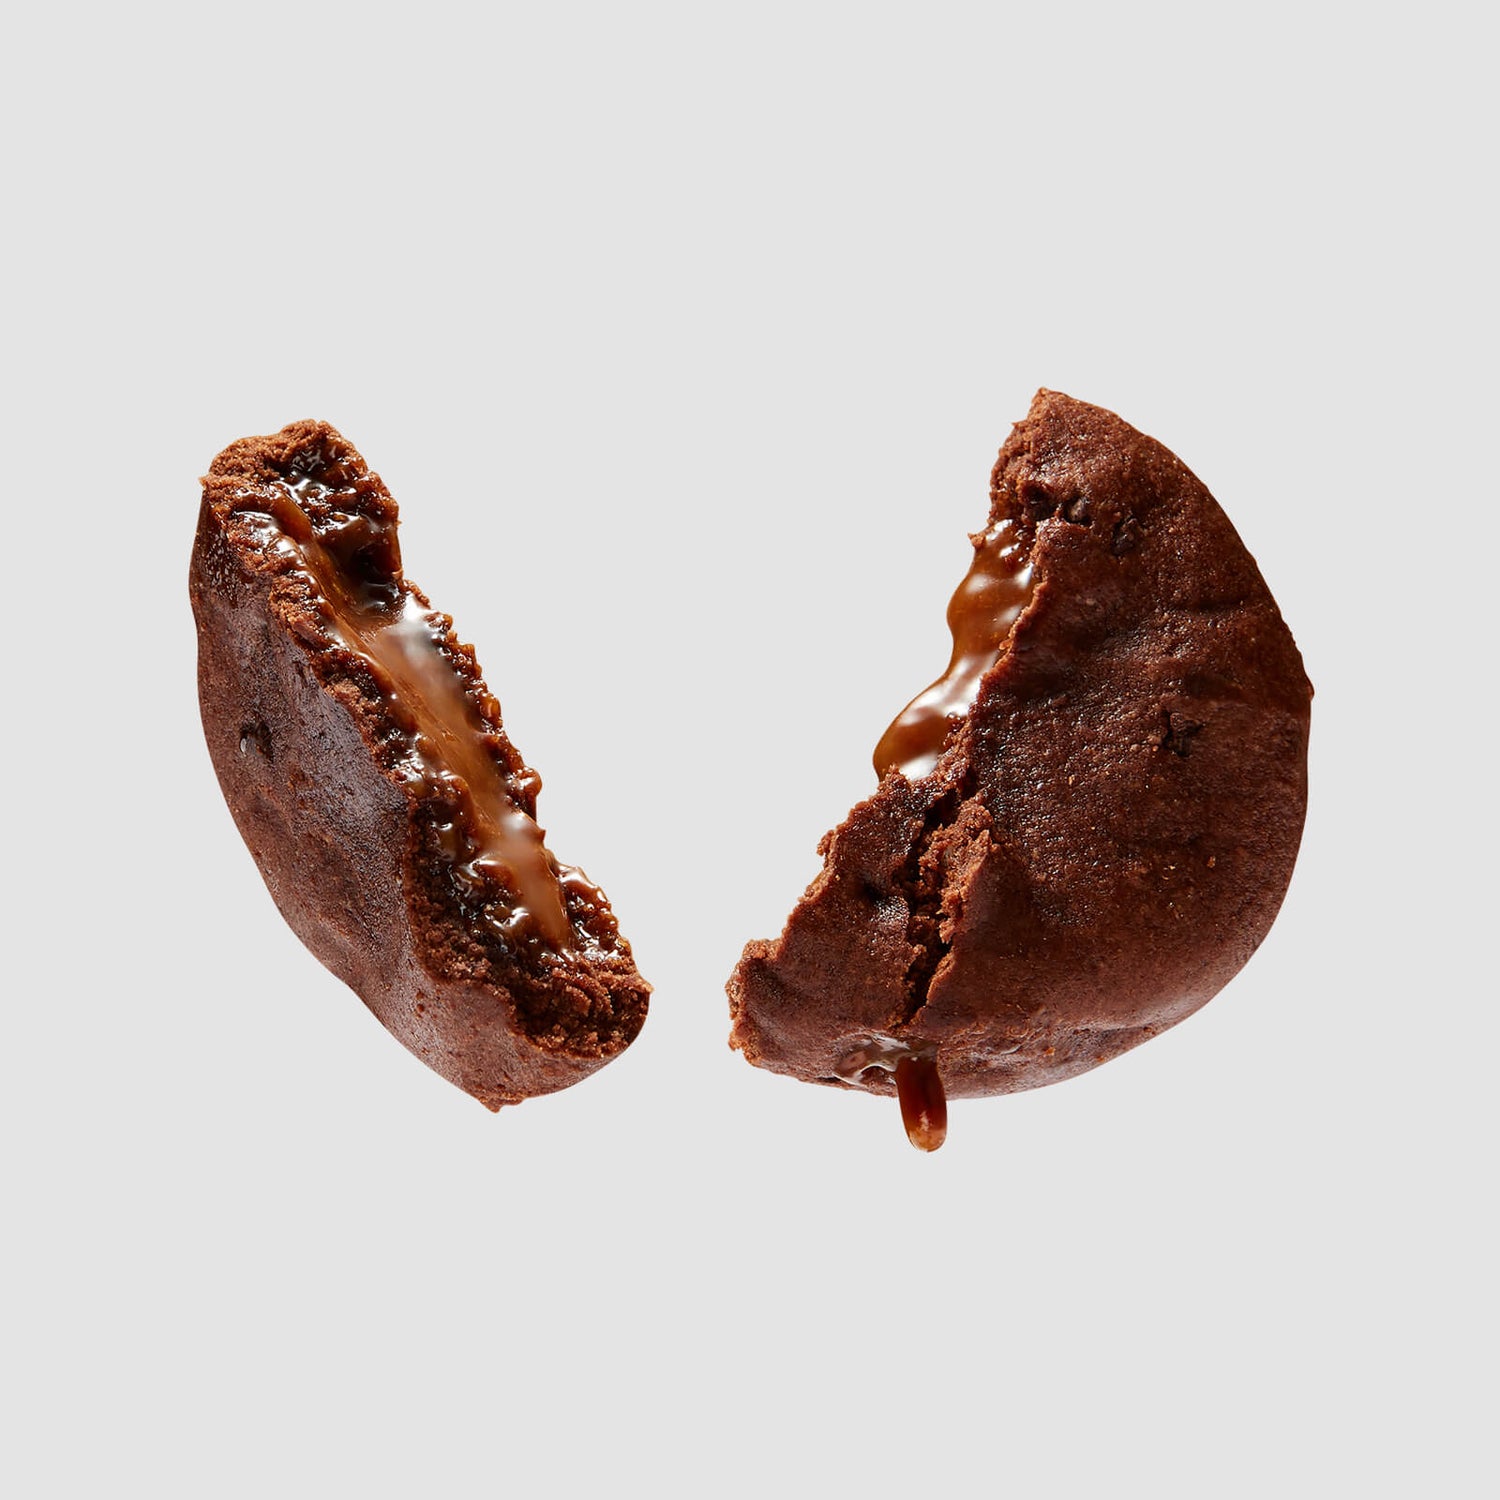 Протеиновое печенье с начинкой - Двойной Шоколад С Карамелью